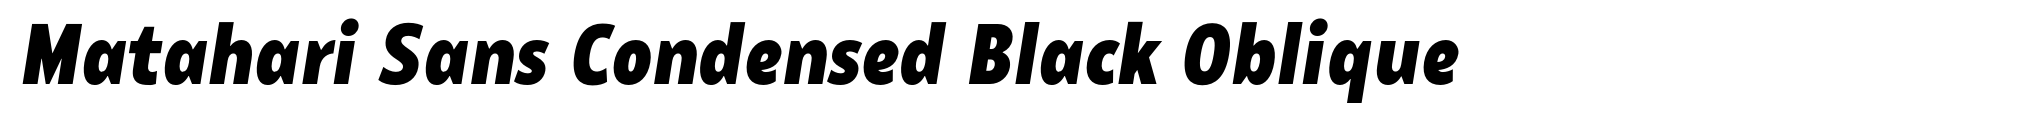 Matahari Sans Condensed Black Oblique image